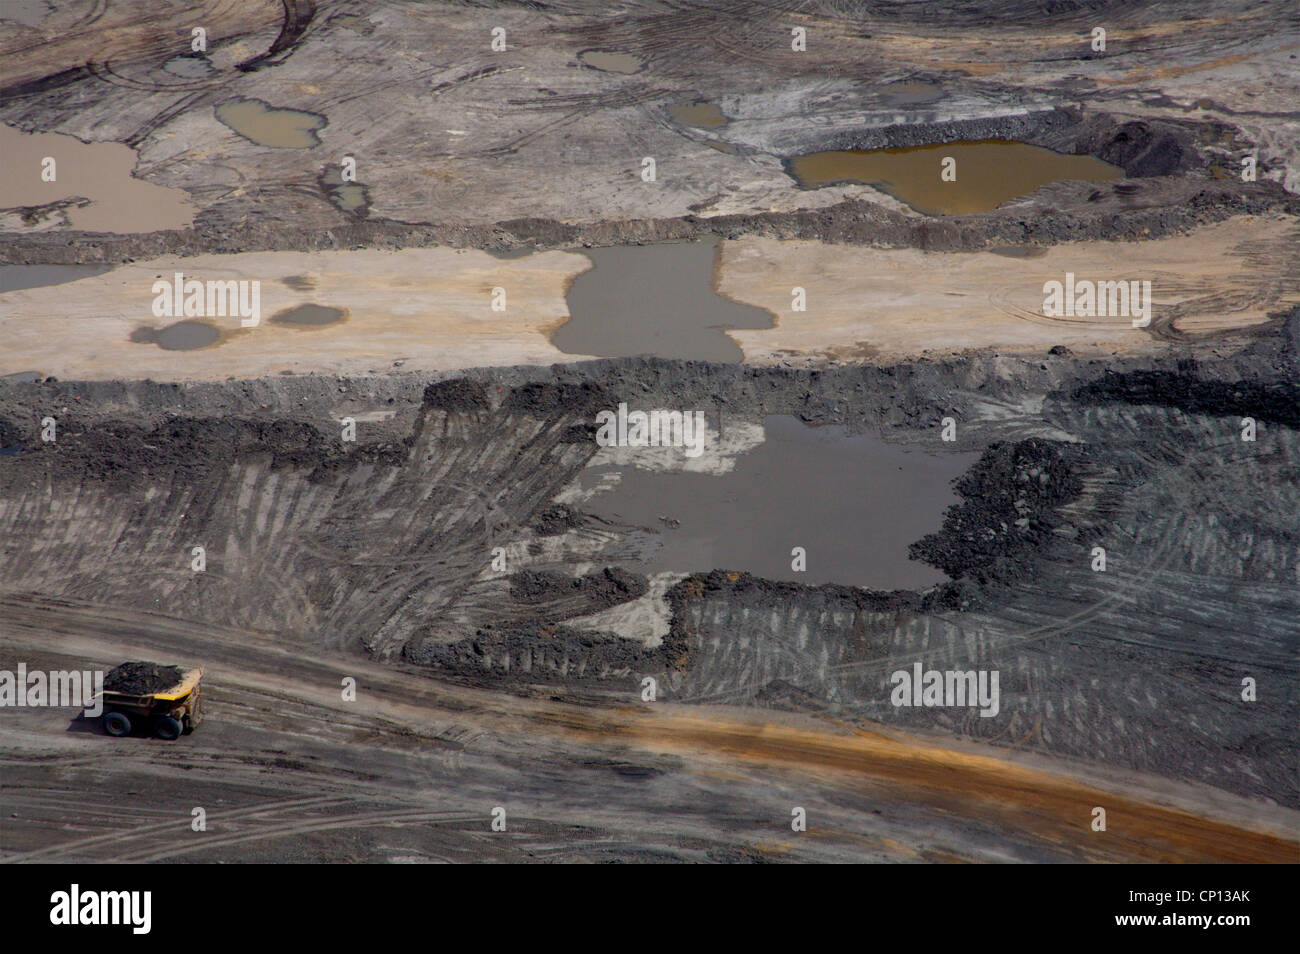 Suncor tar sands mine, Athabasca tar sands, Fort McMurray, Alberta, Canada.©Paul Miles Stock Photo